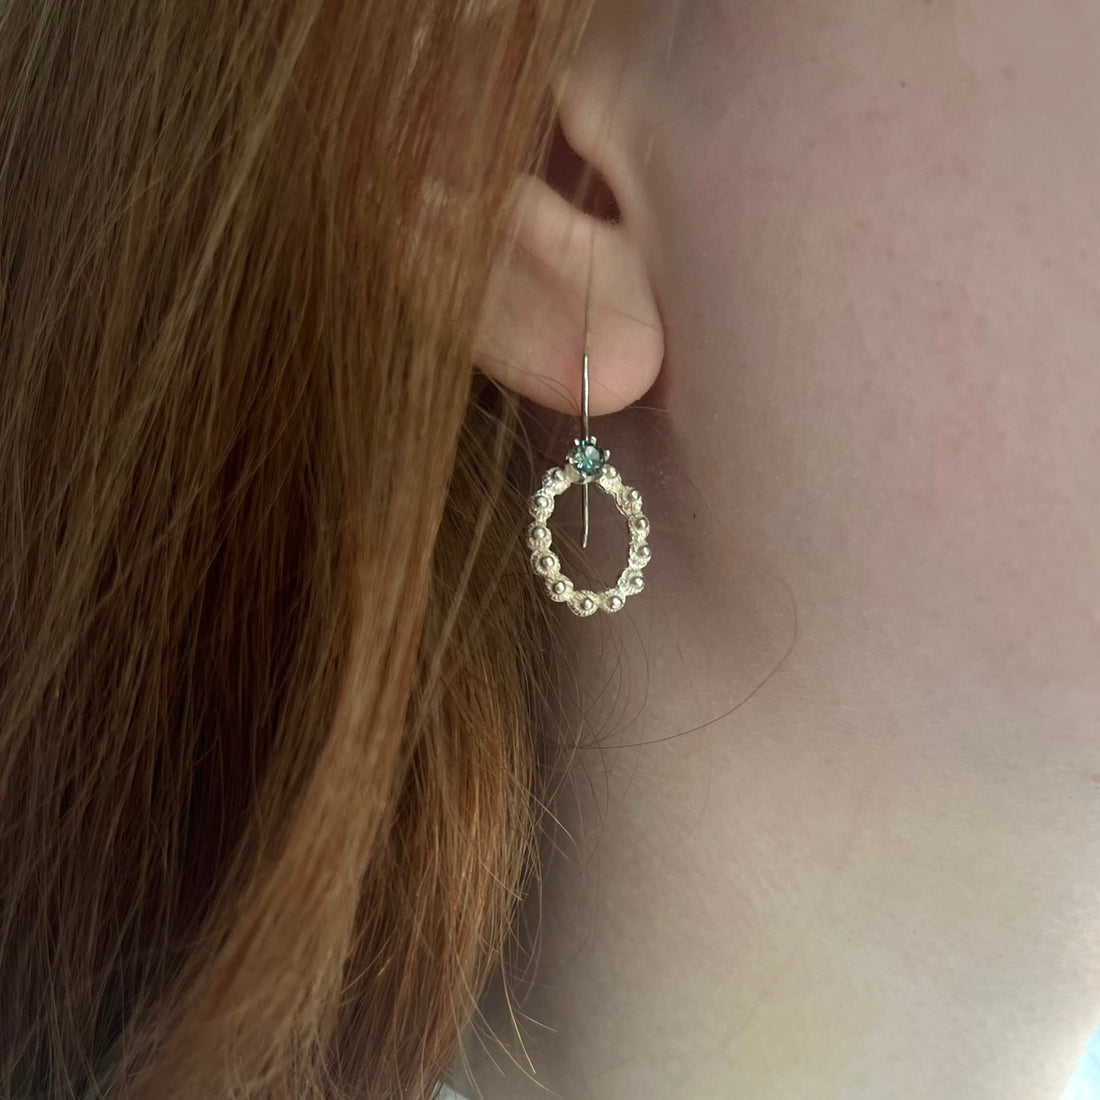 Zeeland oval earrings green spinel with ear hook